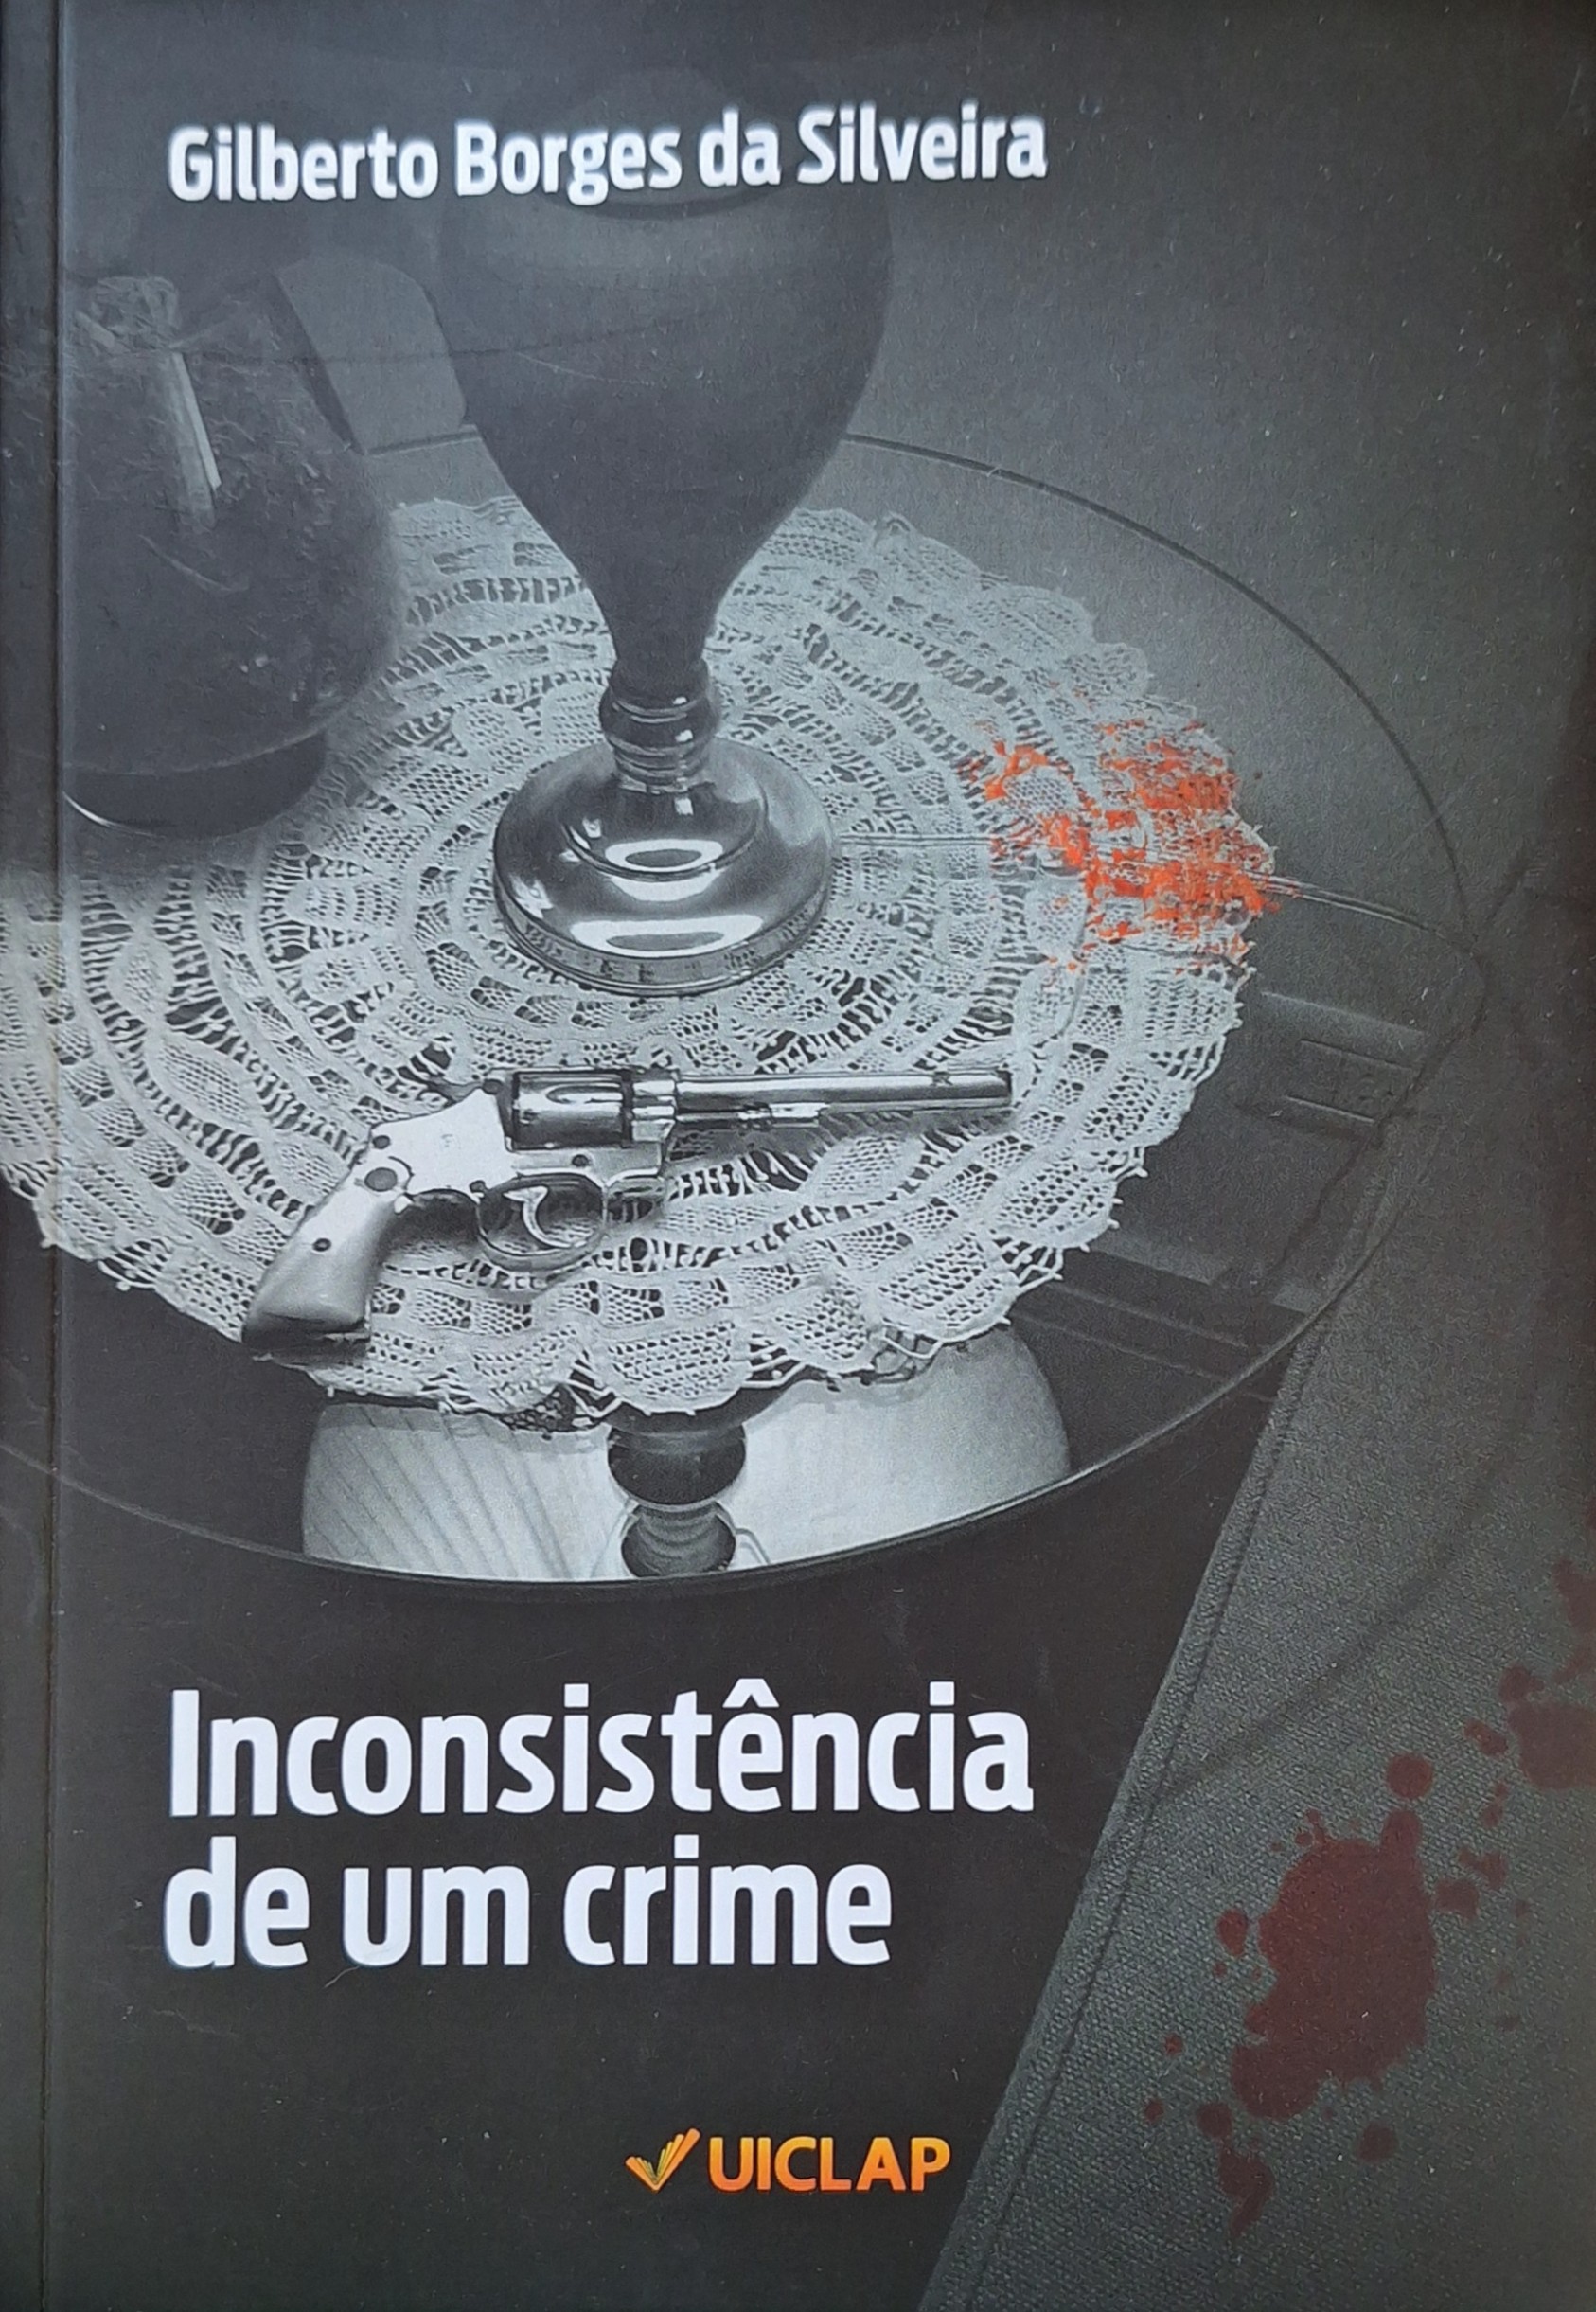 Capa do livro 'Inconsist~encia de um crime', de Gilberto Borges da Silveira, pela Editora Uiclap.